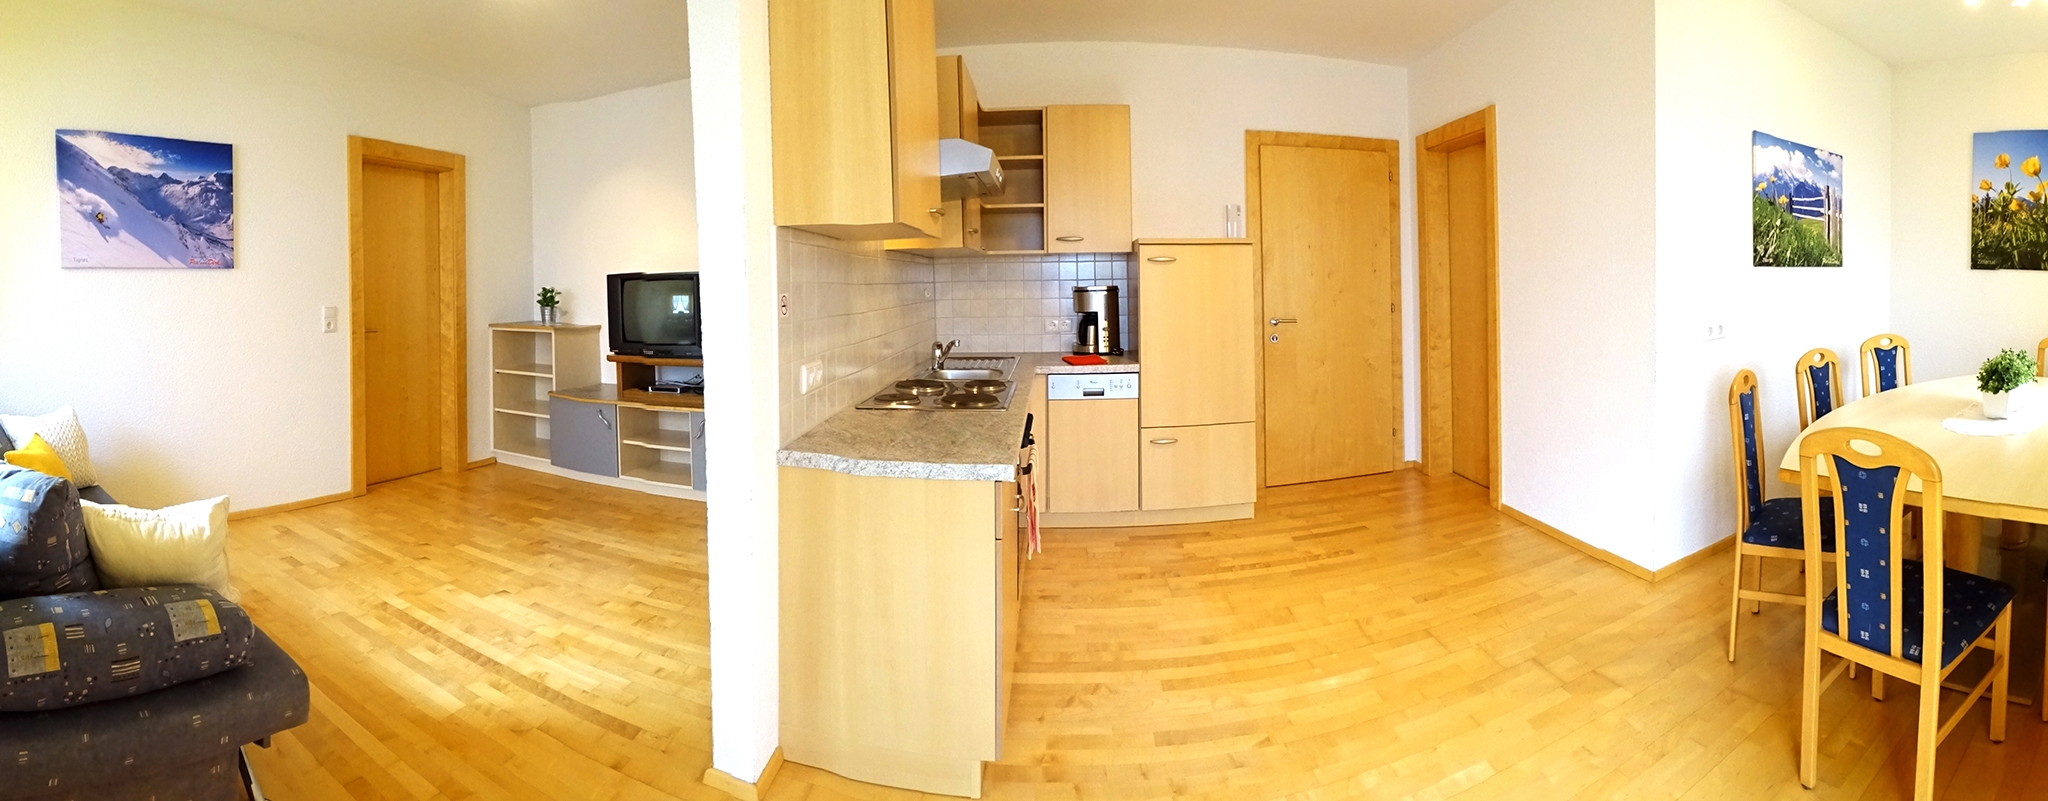 Appartementhaus Alpenjuwel: Komfort-Ferienwohnung für 7 Personen - Wohnbereich mit Küchenzeile